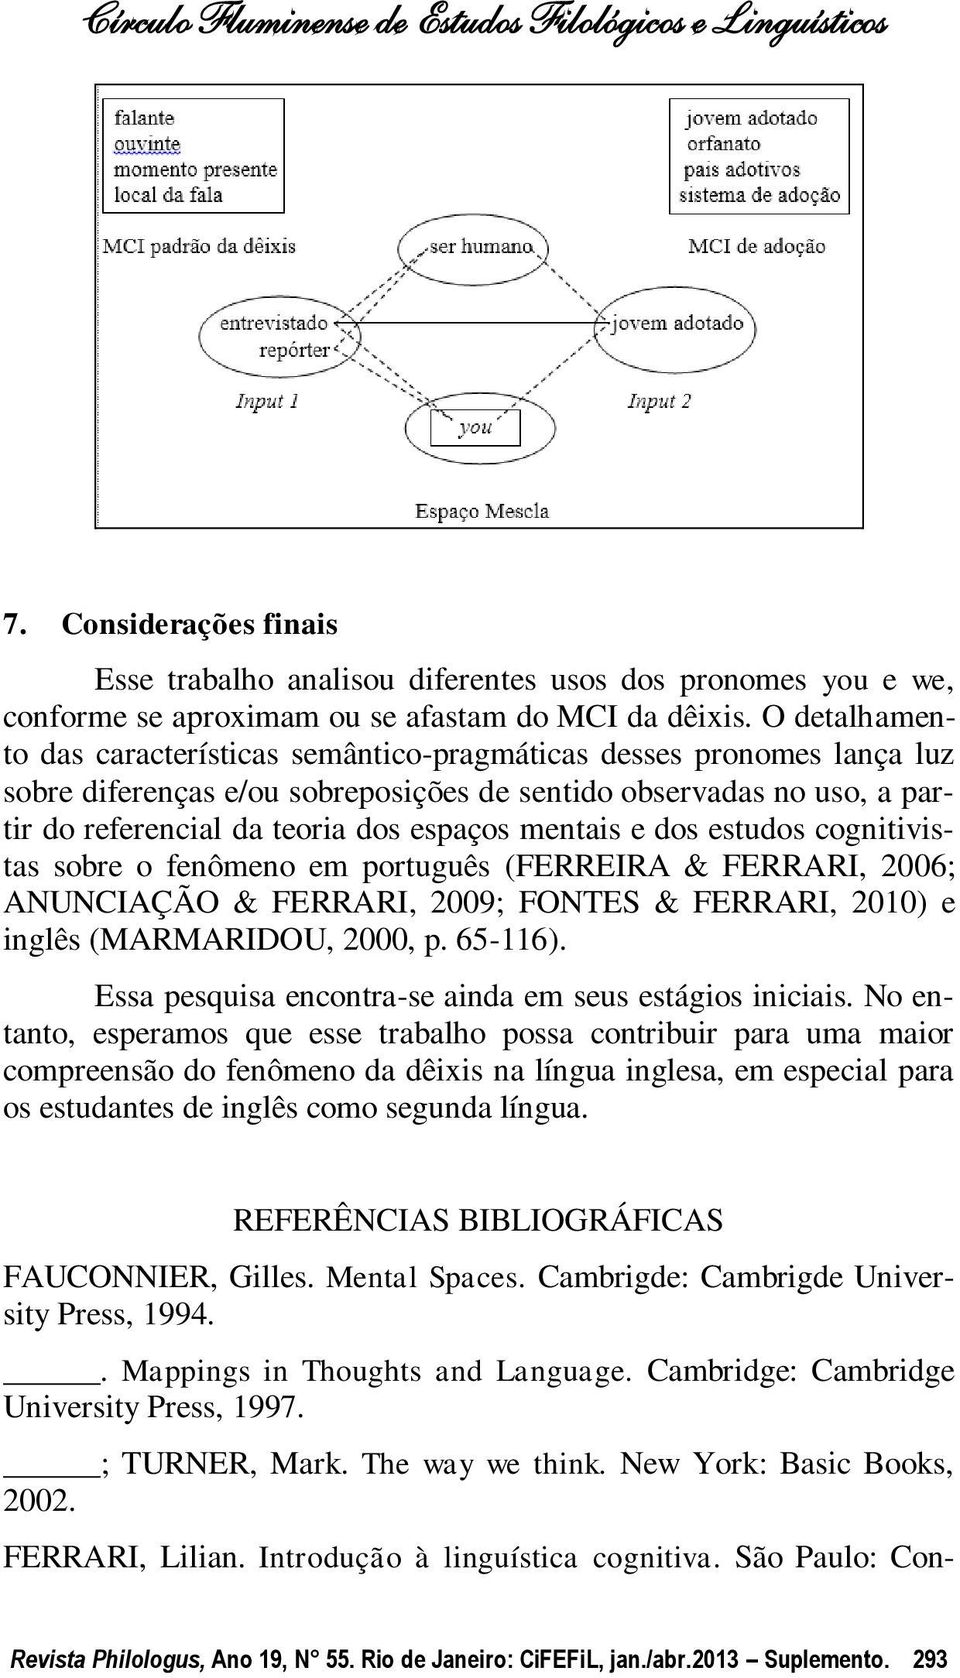 mentais e dos estudos cognitivistas sobre o fenômeno em português (FERREIRA & FERRARI, 2006; ANUNCIAÇÃO & FERRARI, 2009; FONTES & FERRARI, 2010) e inglês (MARMARIDOU, 2000, p. 65-116).